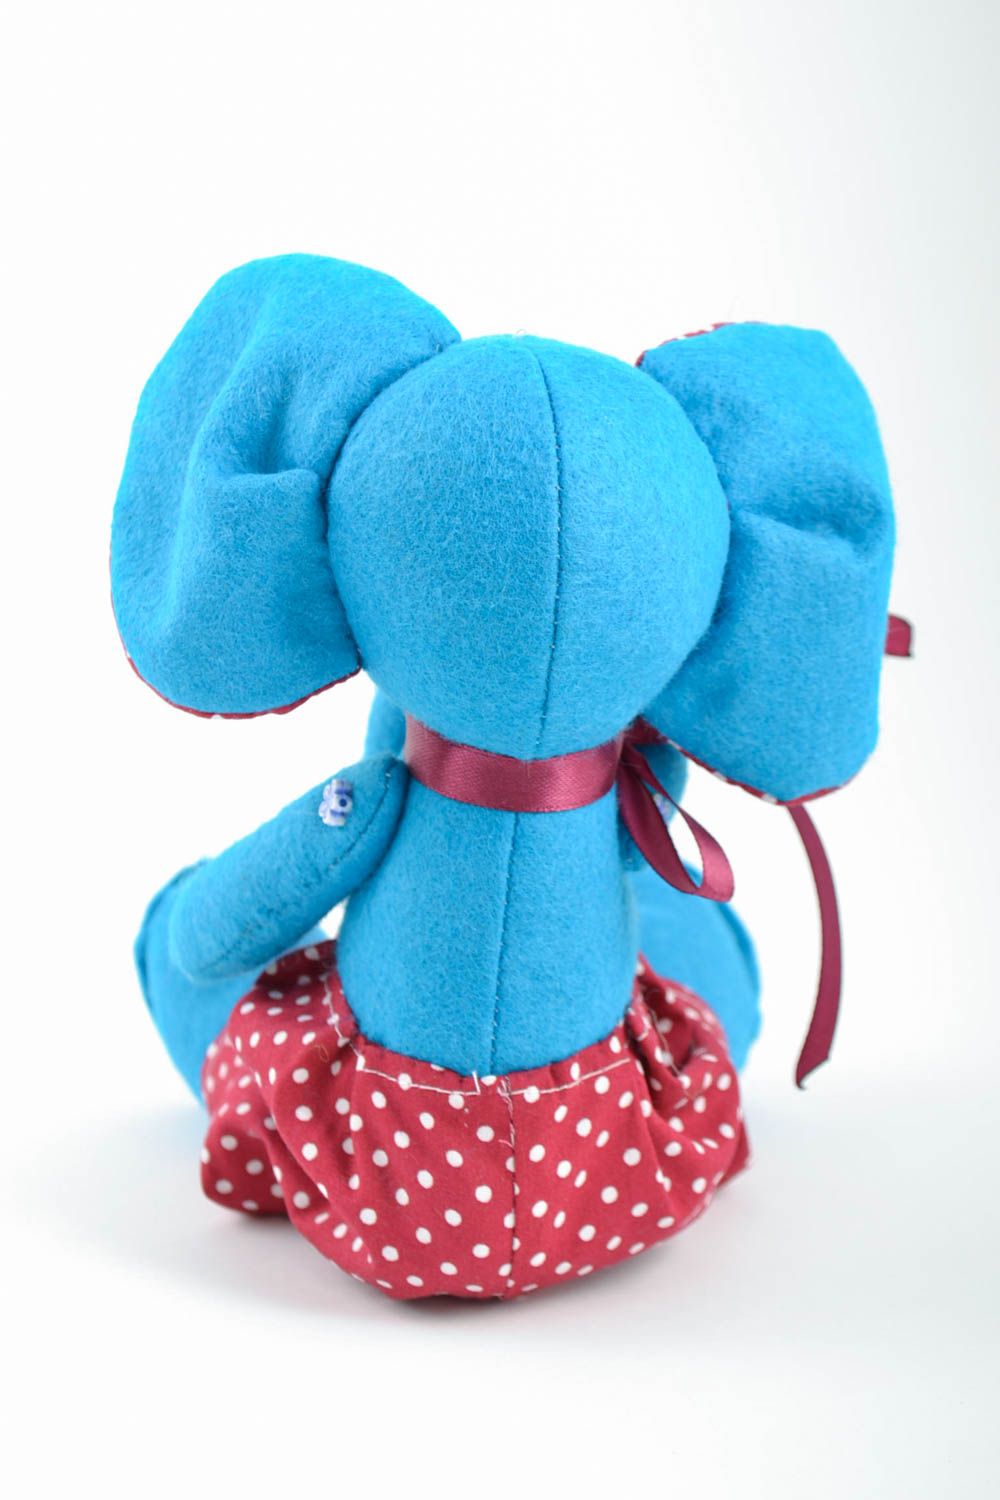 Голубая игрушка слоник из фетра ручной работы мягкая оригинальная красивая фото 2